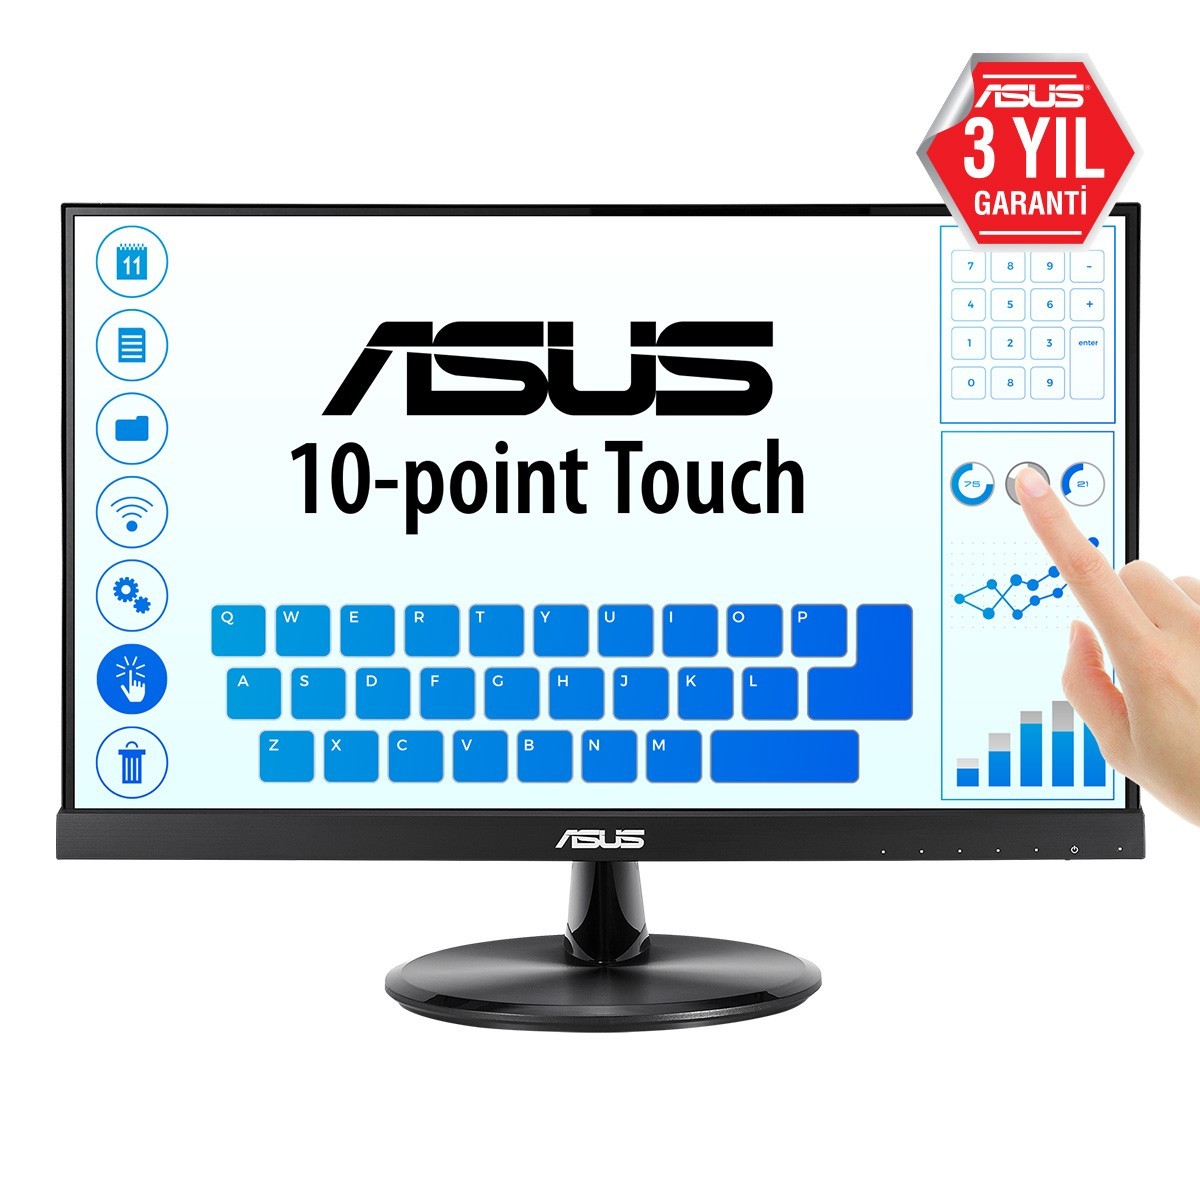 ASUS VT229H - 54.6 cm (21.5) - 1920 x 1080 pixels - Full HD - 5 ms - Black